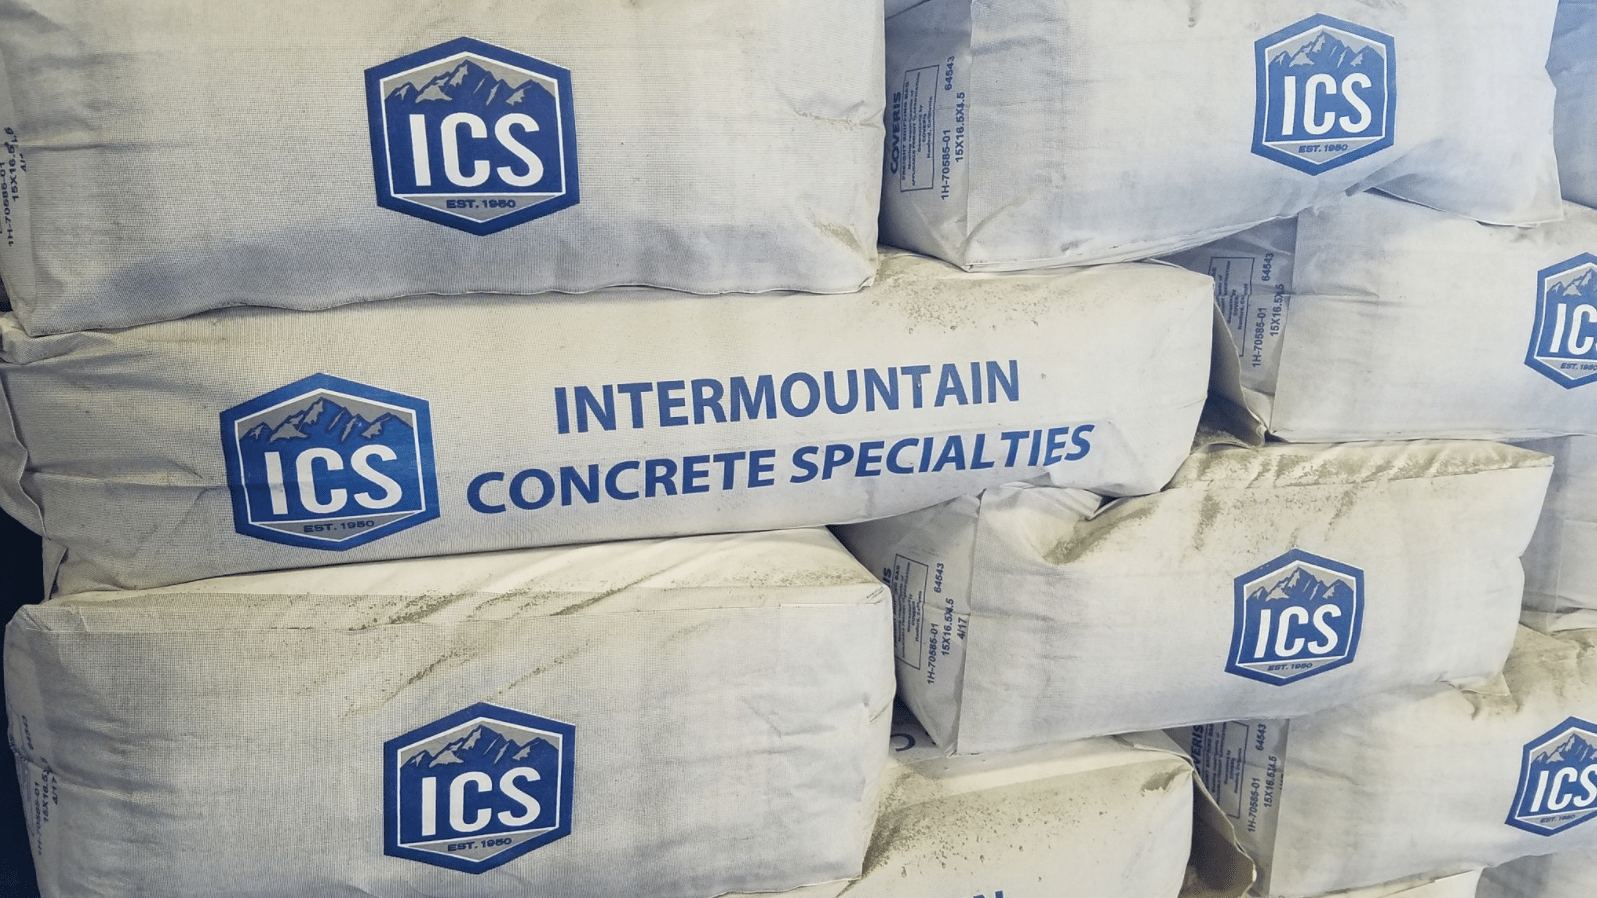 ICS precision concrete grout